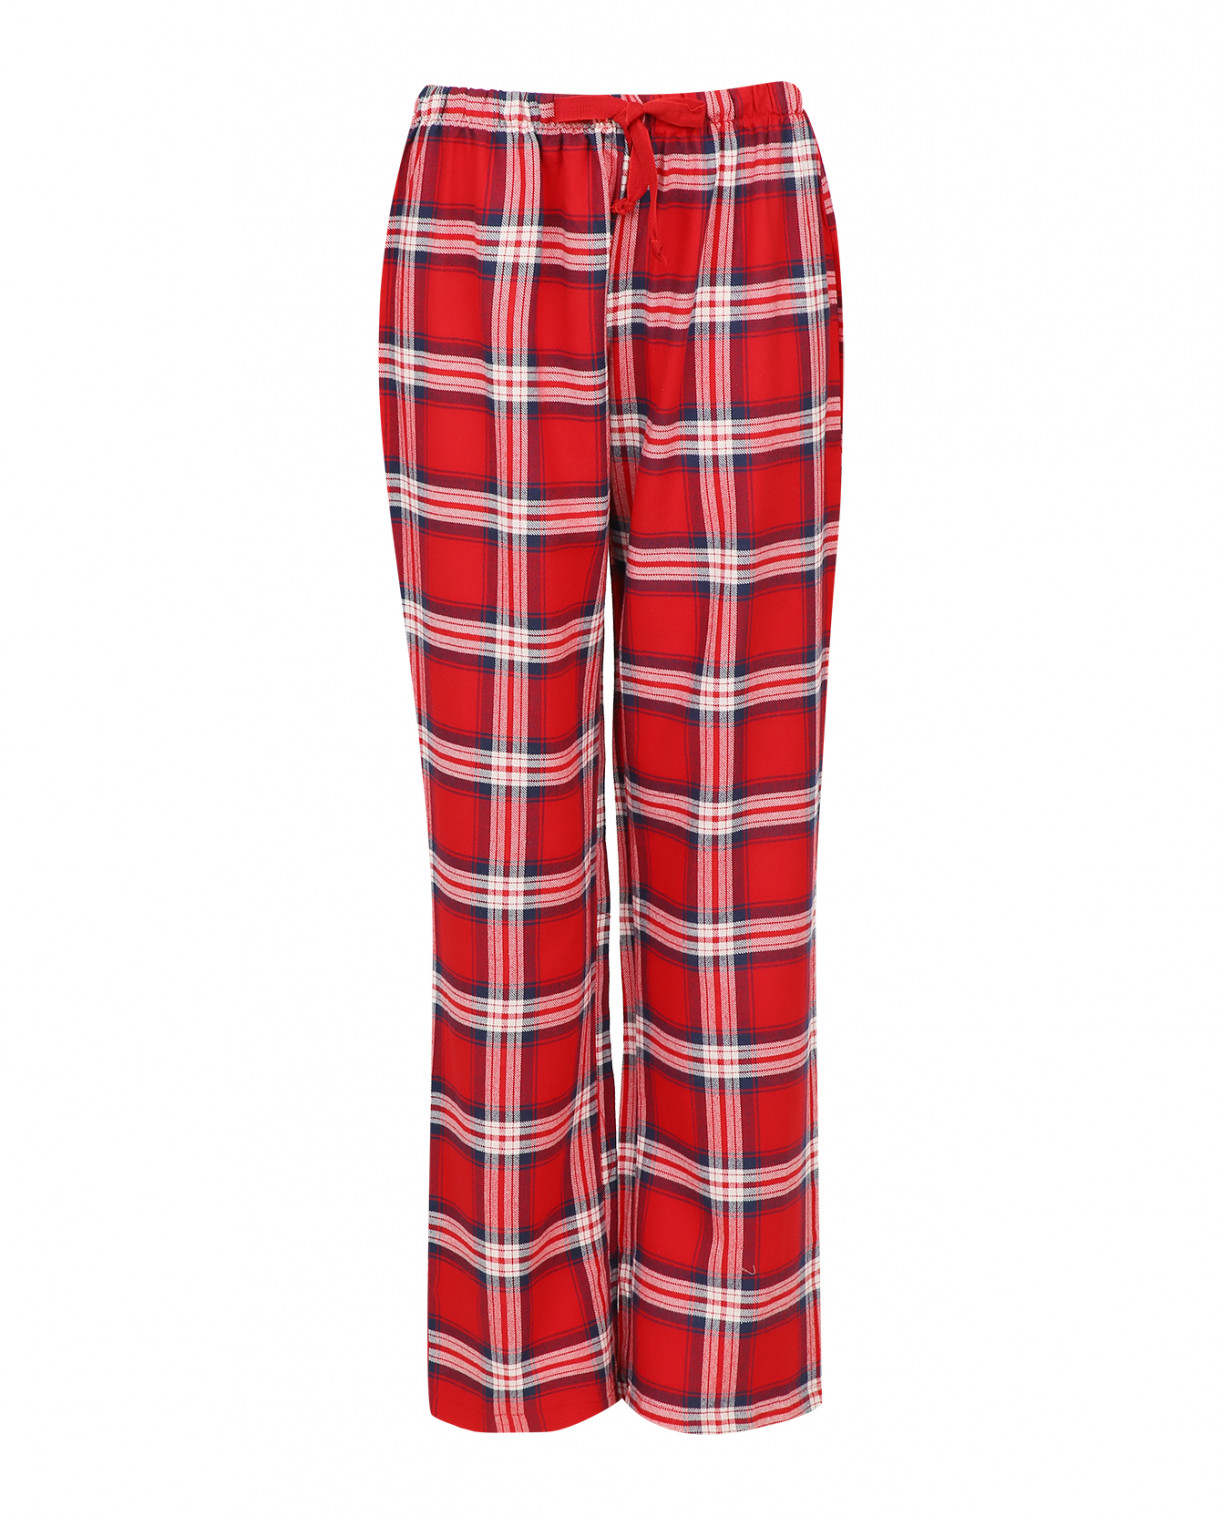 Пижама-кофта и брюки из хлопка с принтом "клетка" bacirubati  –  Общий вид  – Цвет:  Красный